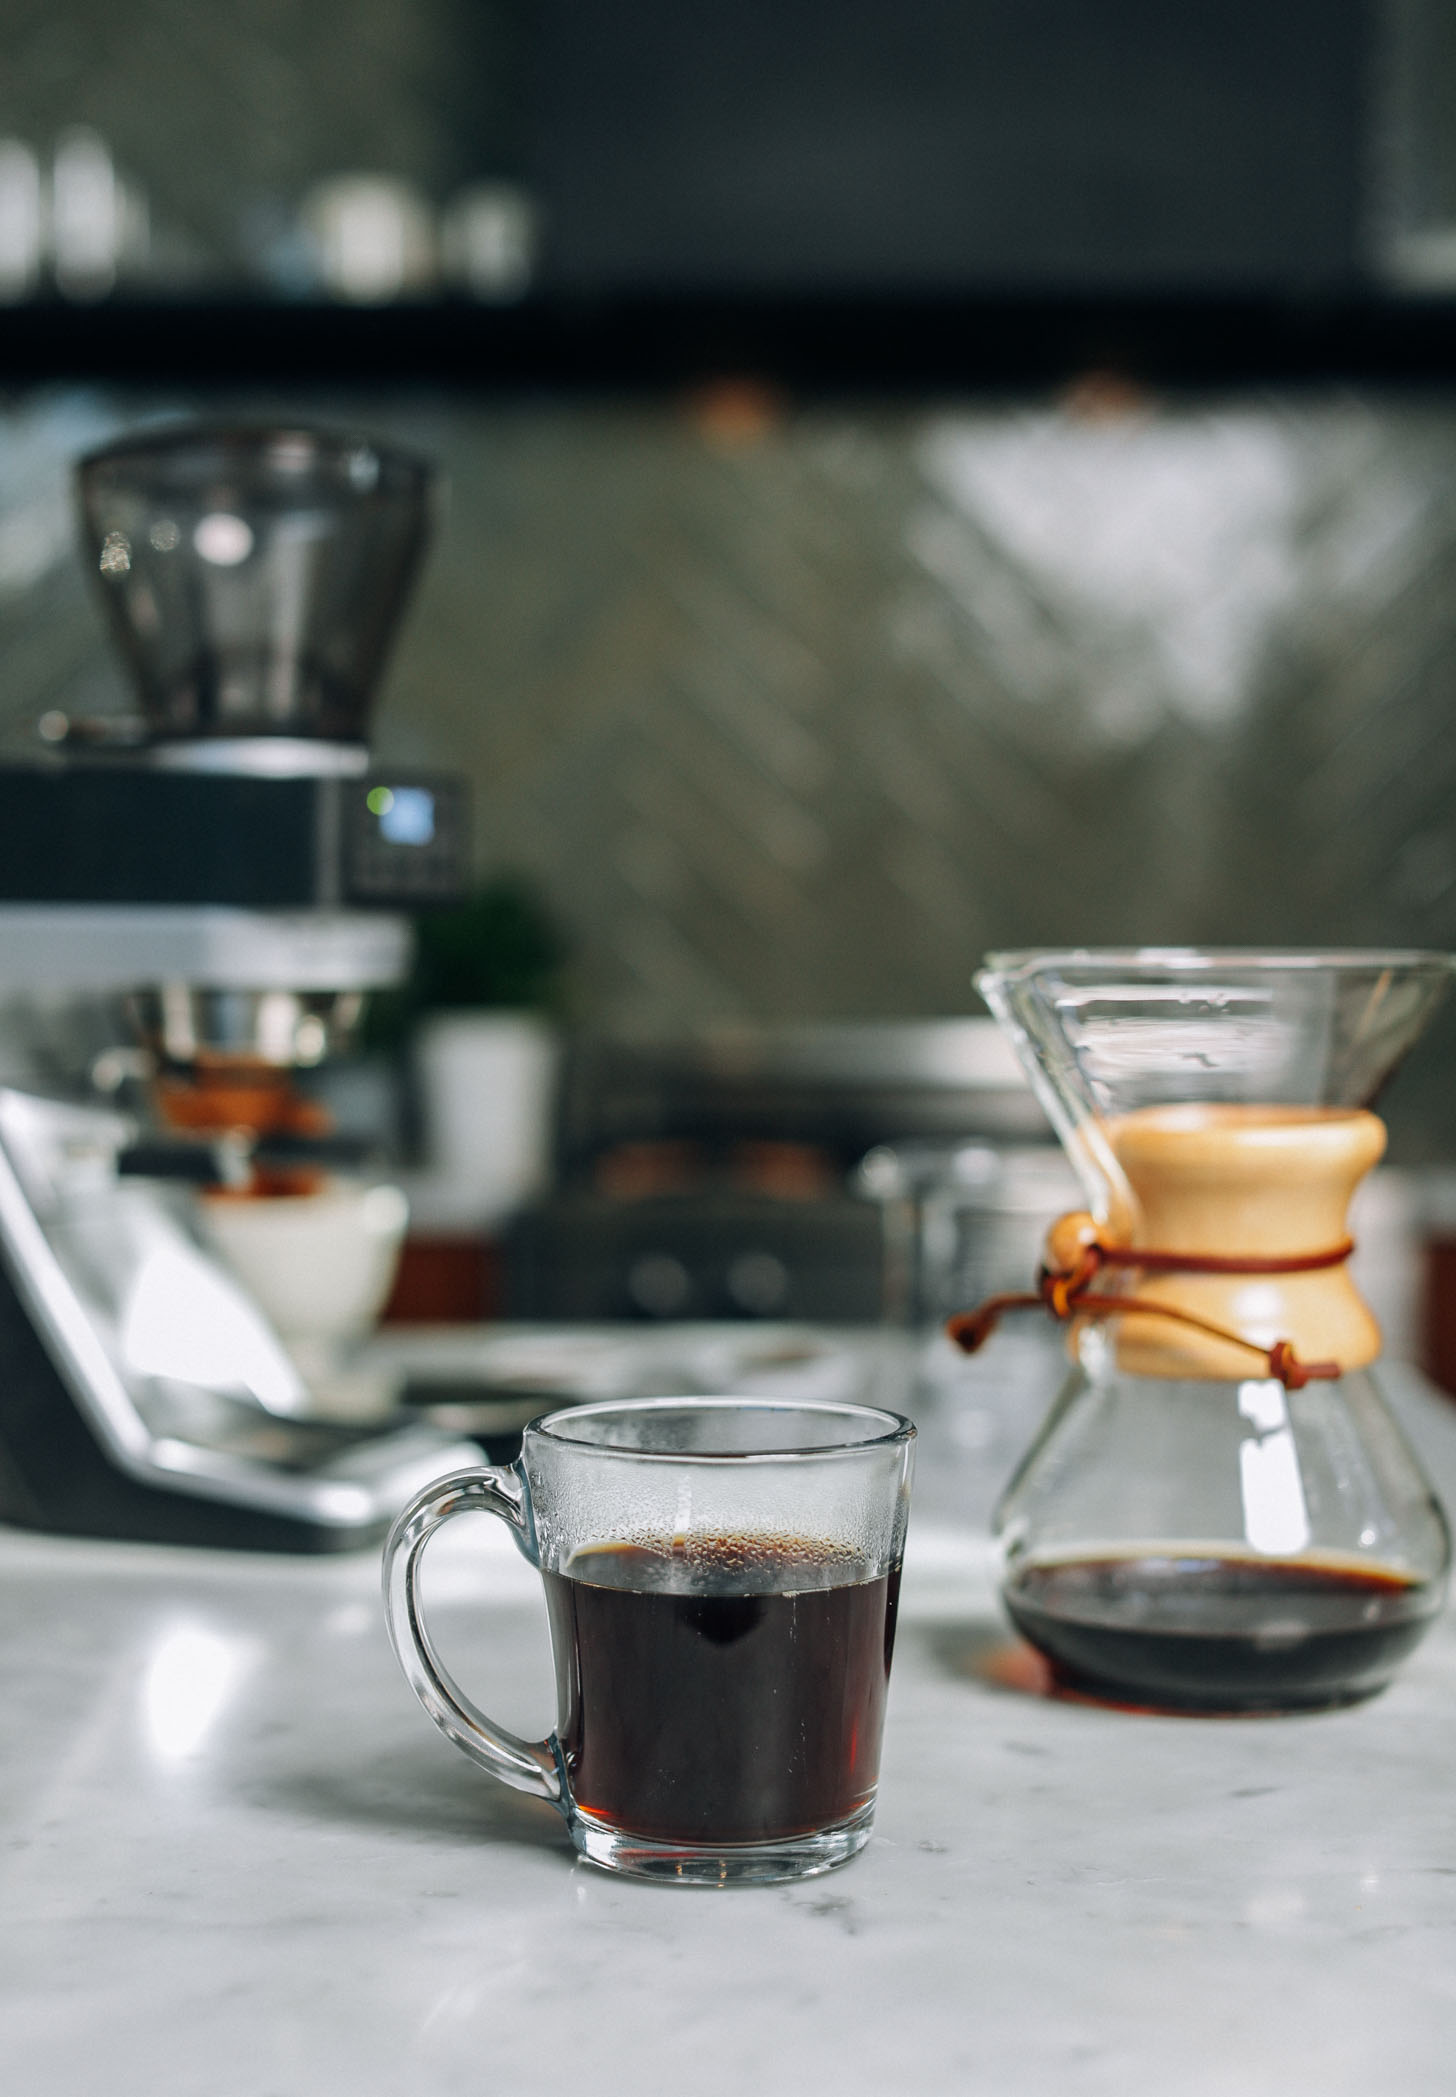 Coffee grinder, mug of coffee, and drip coffee maker